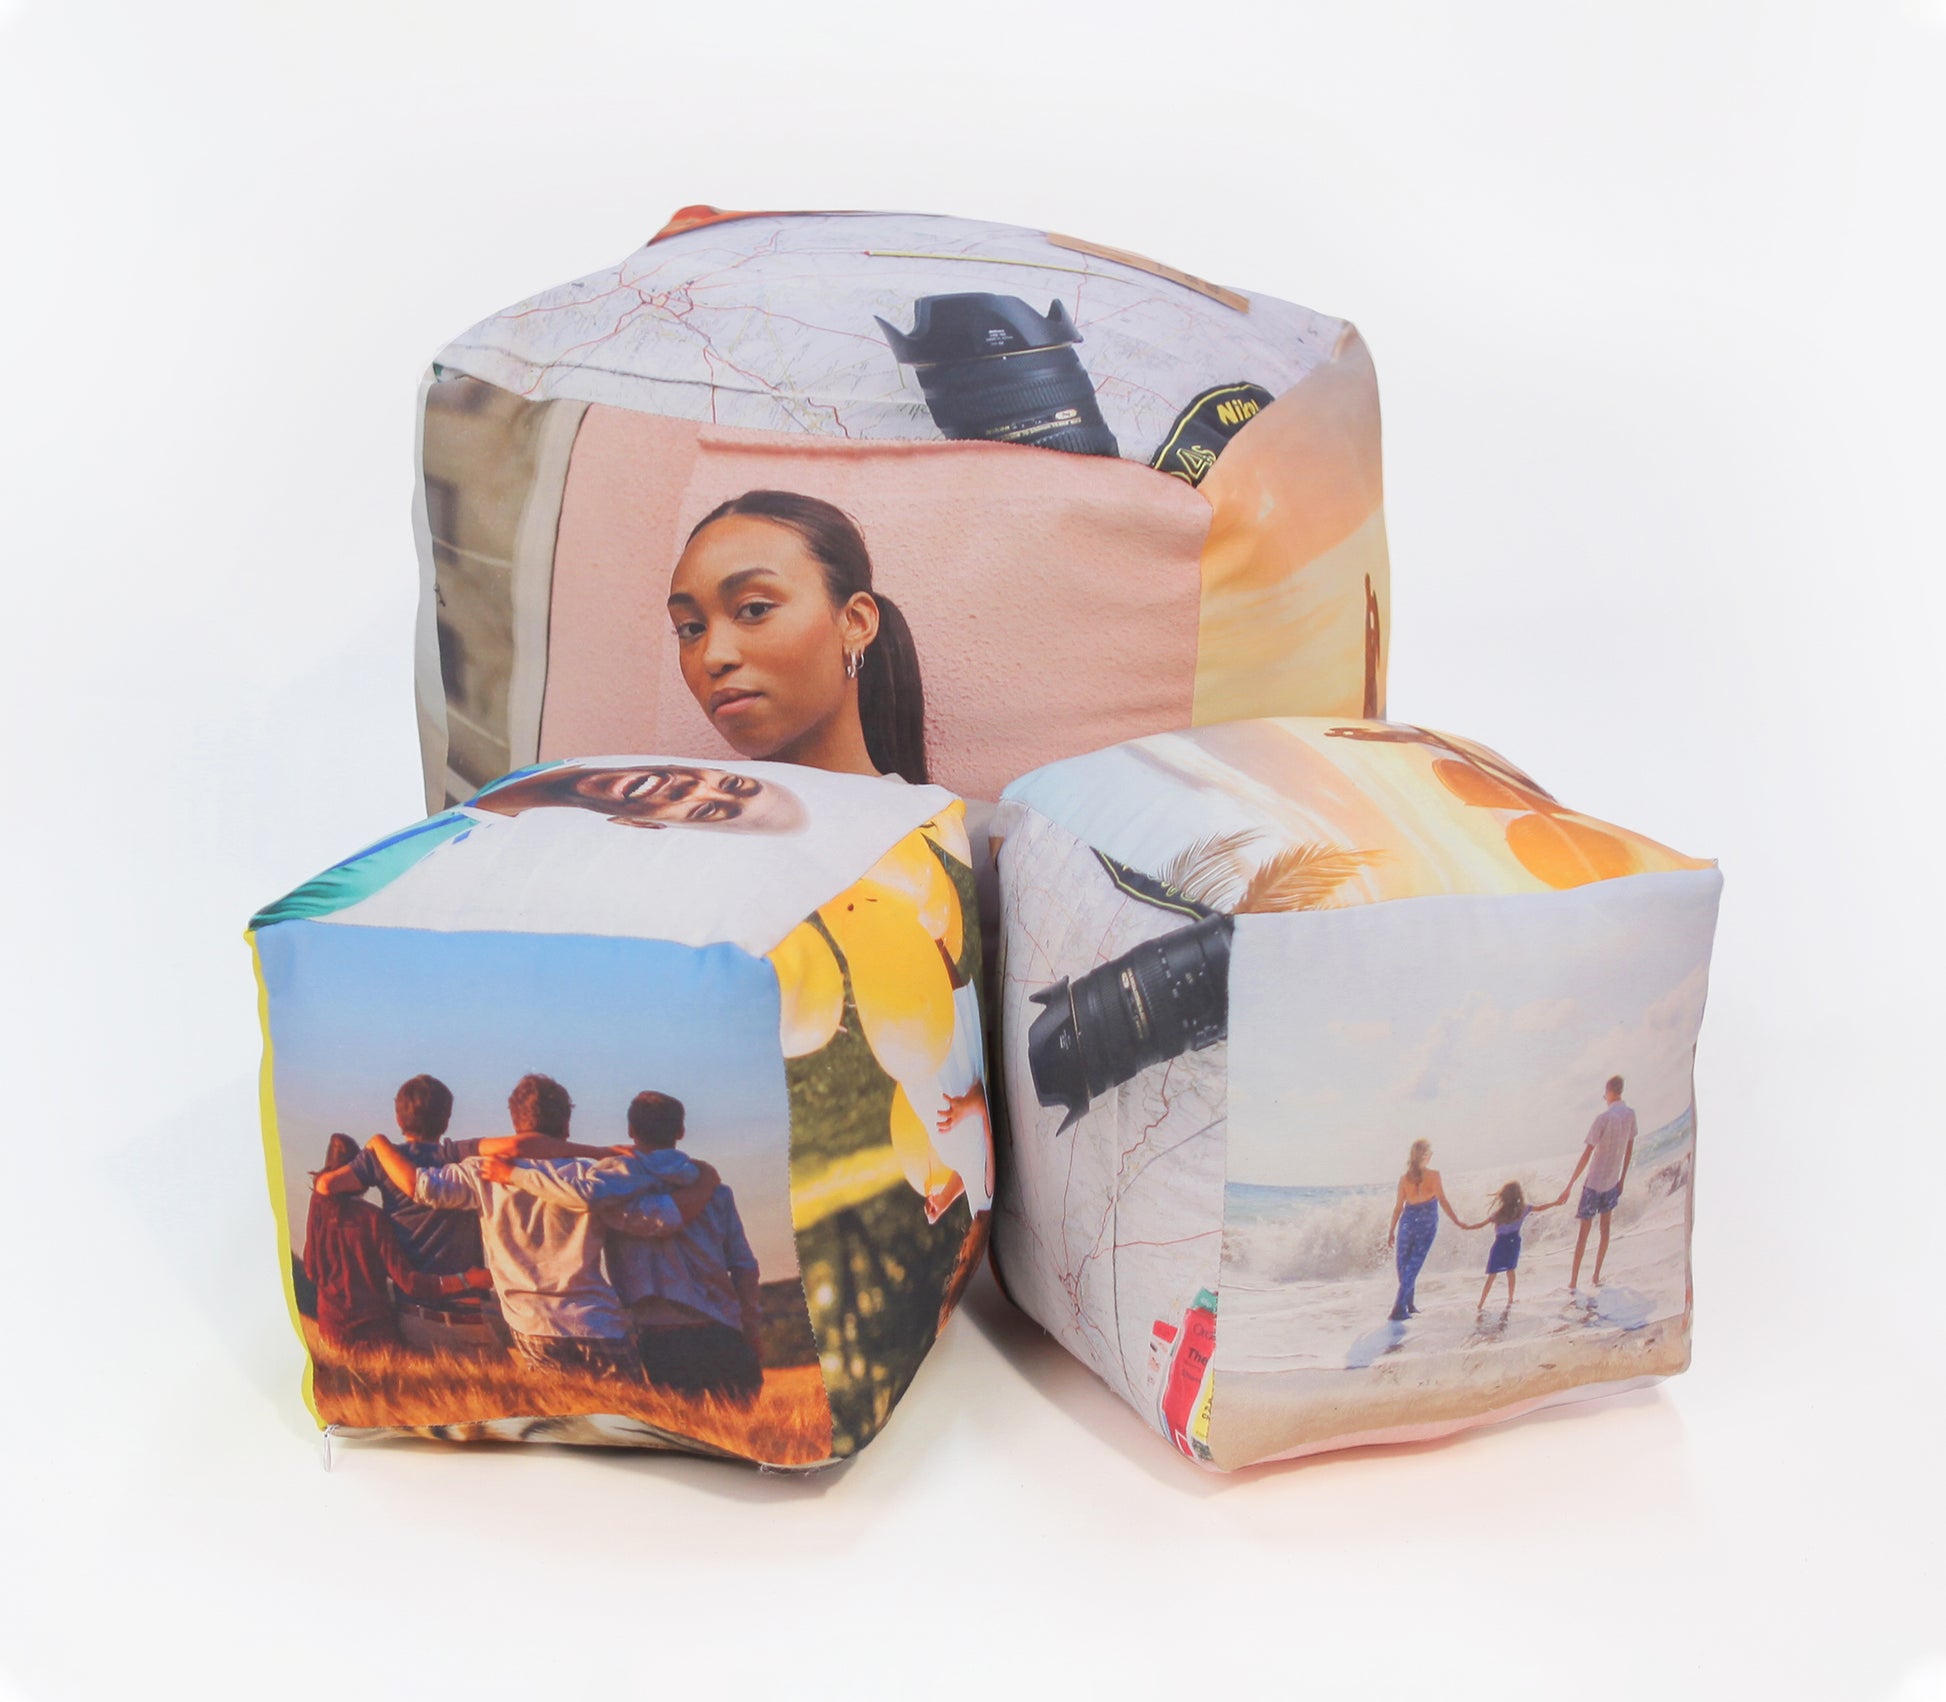 cube cushion collage photo. one 50x50cm cube cushion. two 25x25cm cube cushion